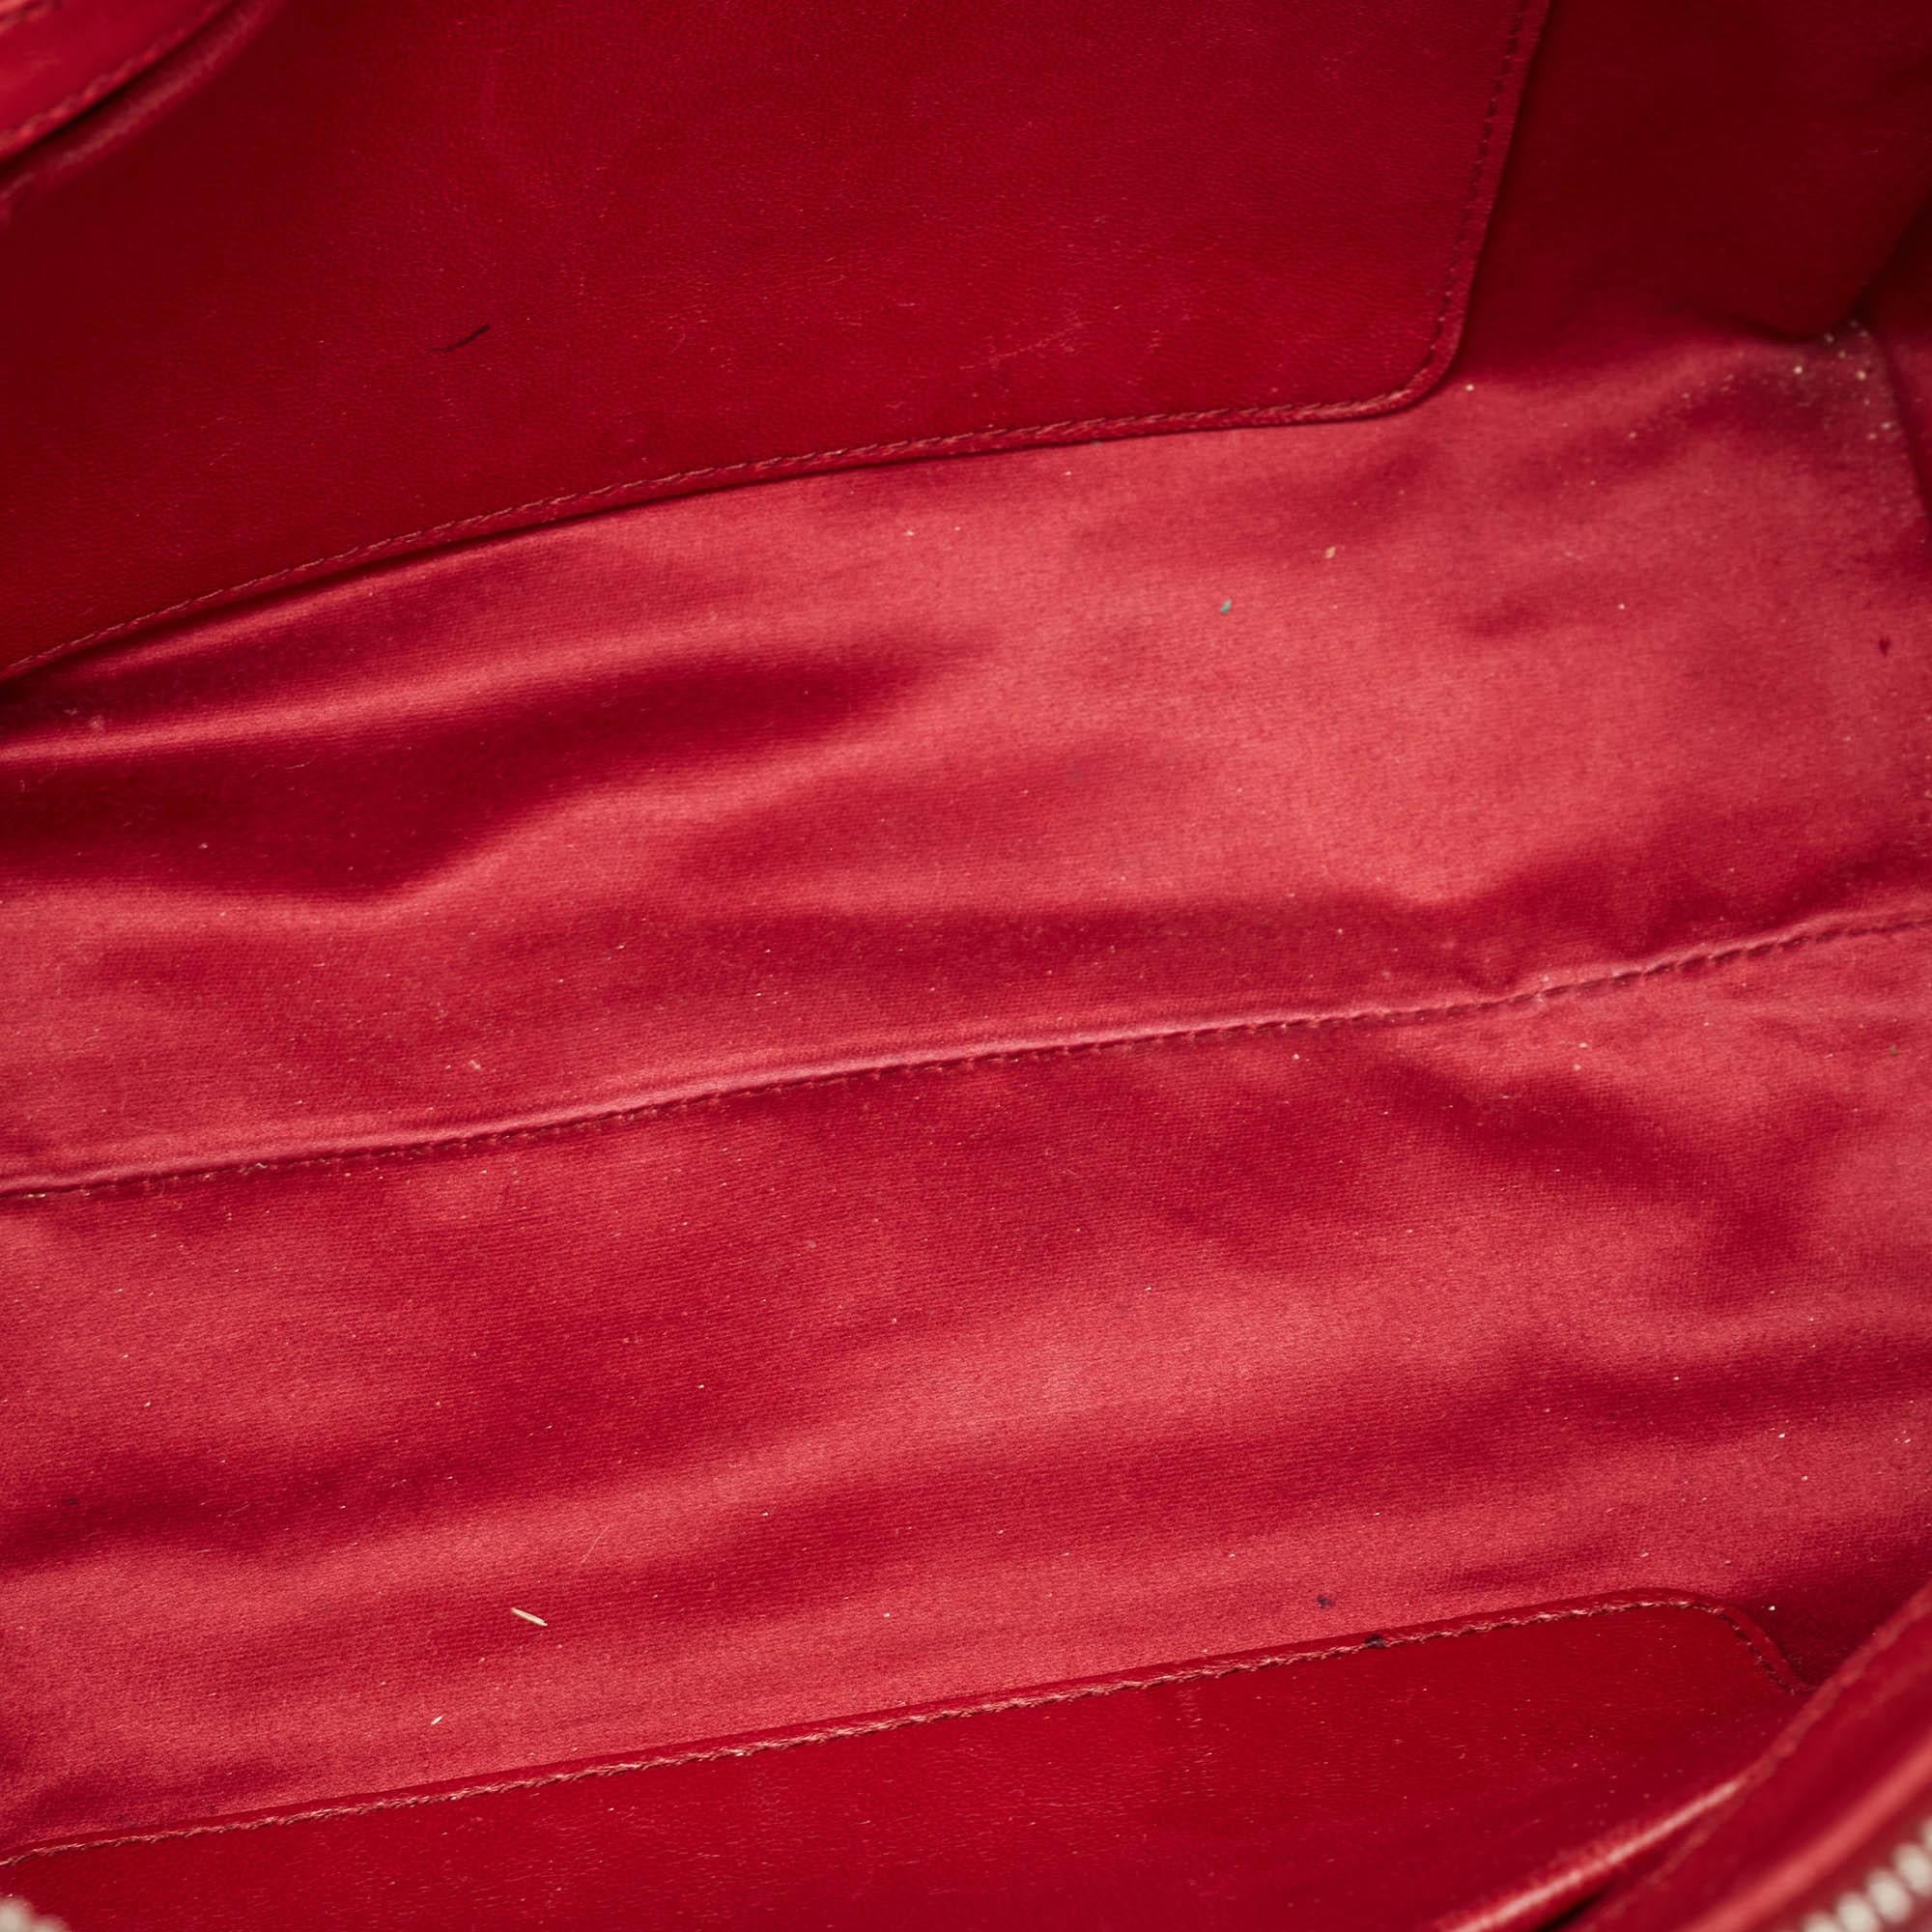 Miu Miu Red Matelasse Leather Top Zip Tote 6